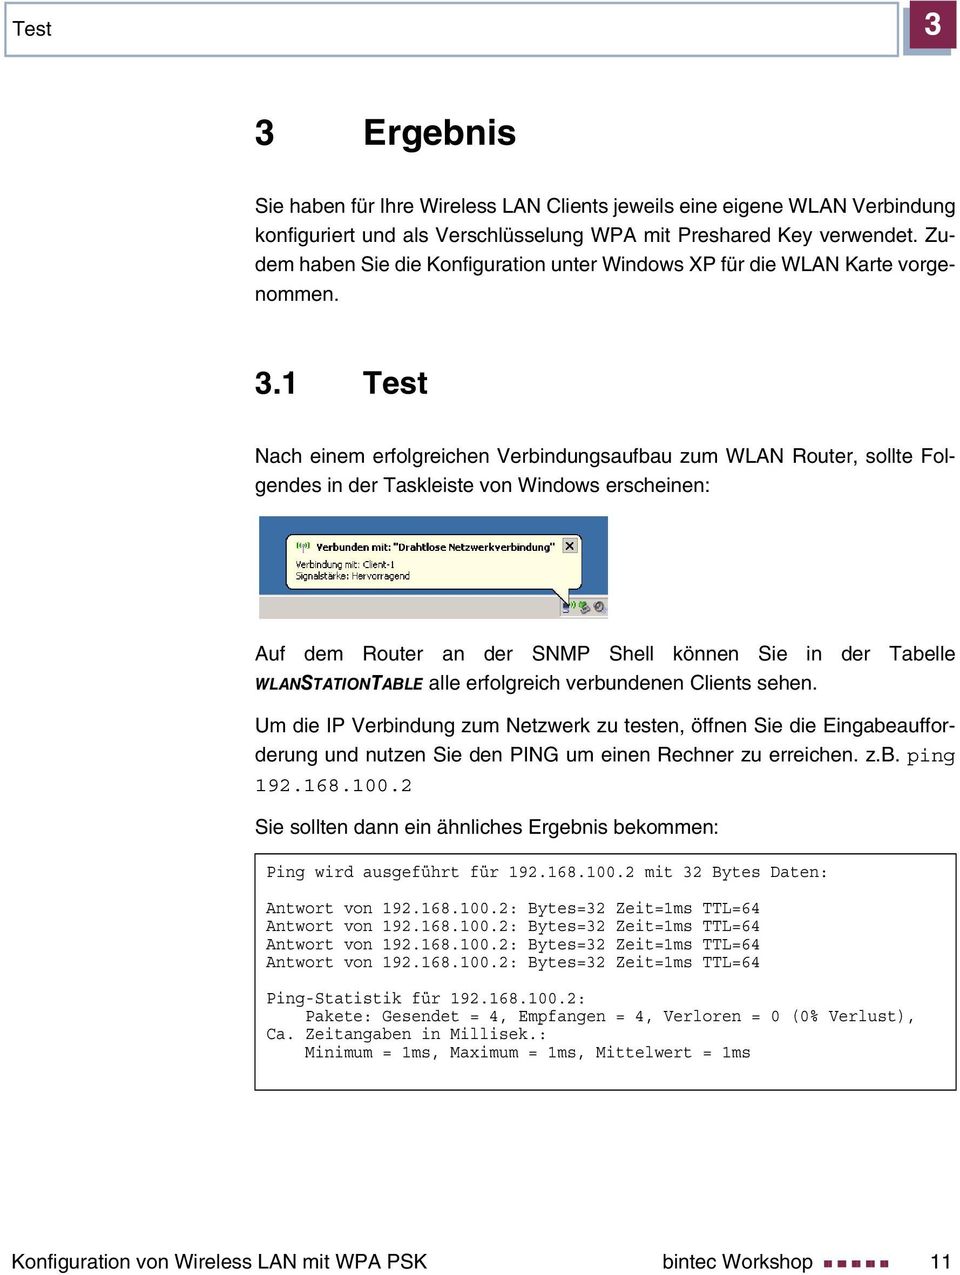 1 Test Nach einem erfolgreichen Verbindungsaufbau zum WLAN Router, sollte Folgendes in der Taskleiste von Windows erscheinen: Auf dem Router an der SNMP Shell können Sie in der Tabelle